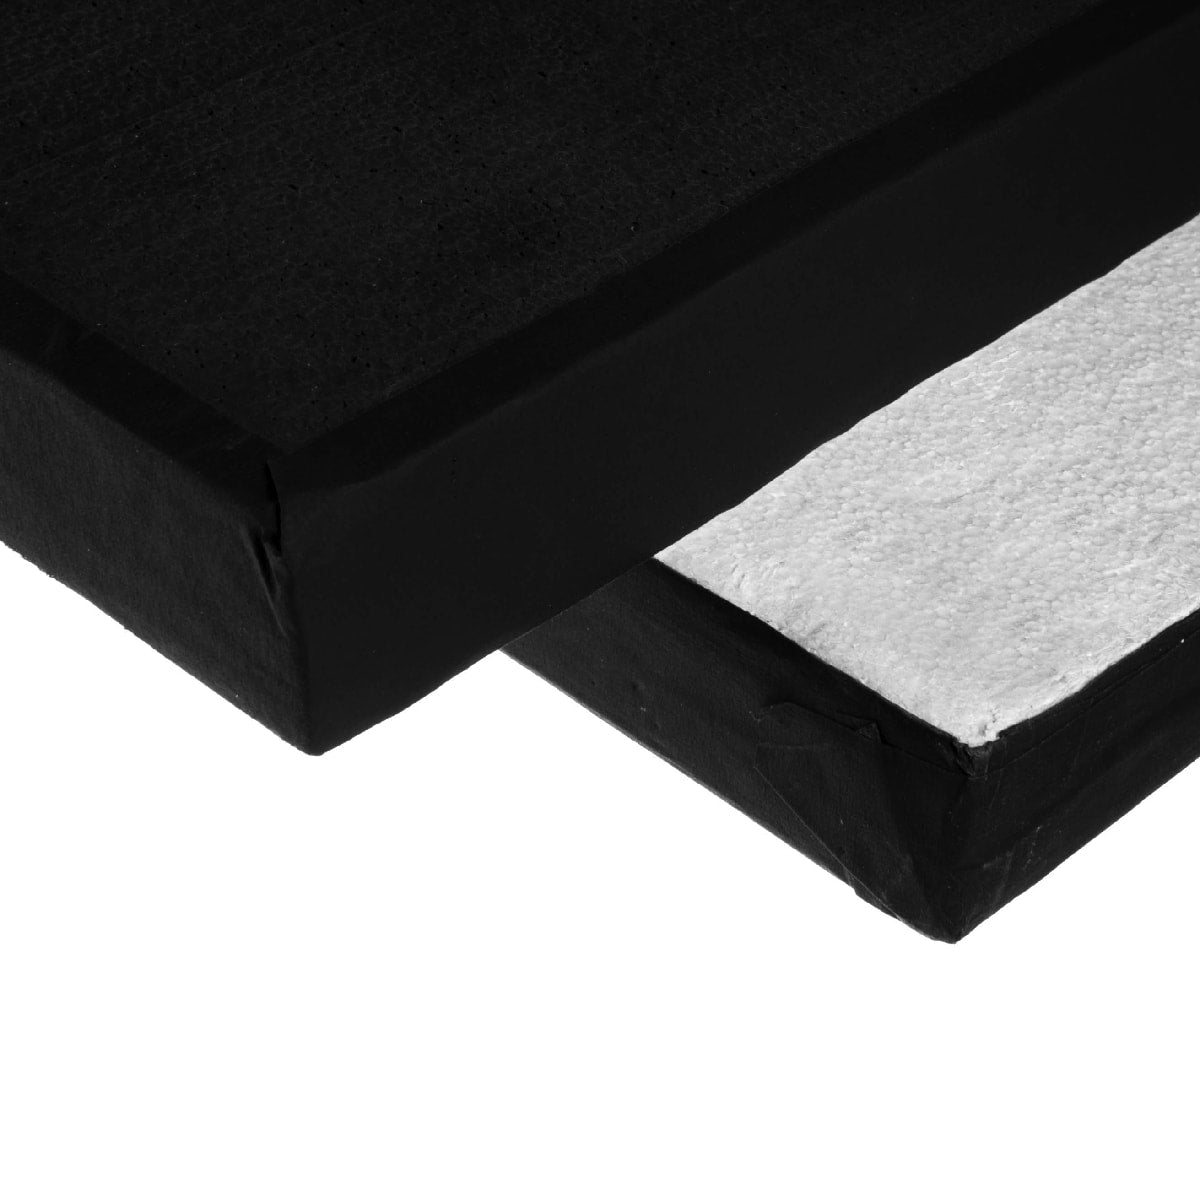  Polyboard black/white 120 x 300 cm / 4 x 10'